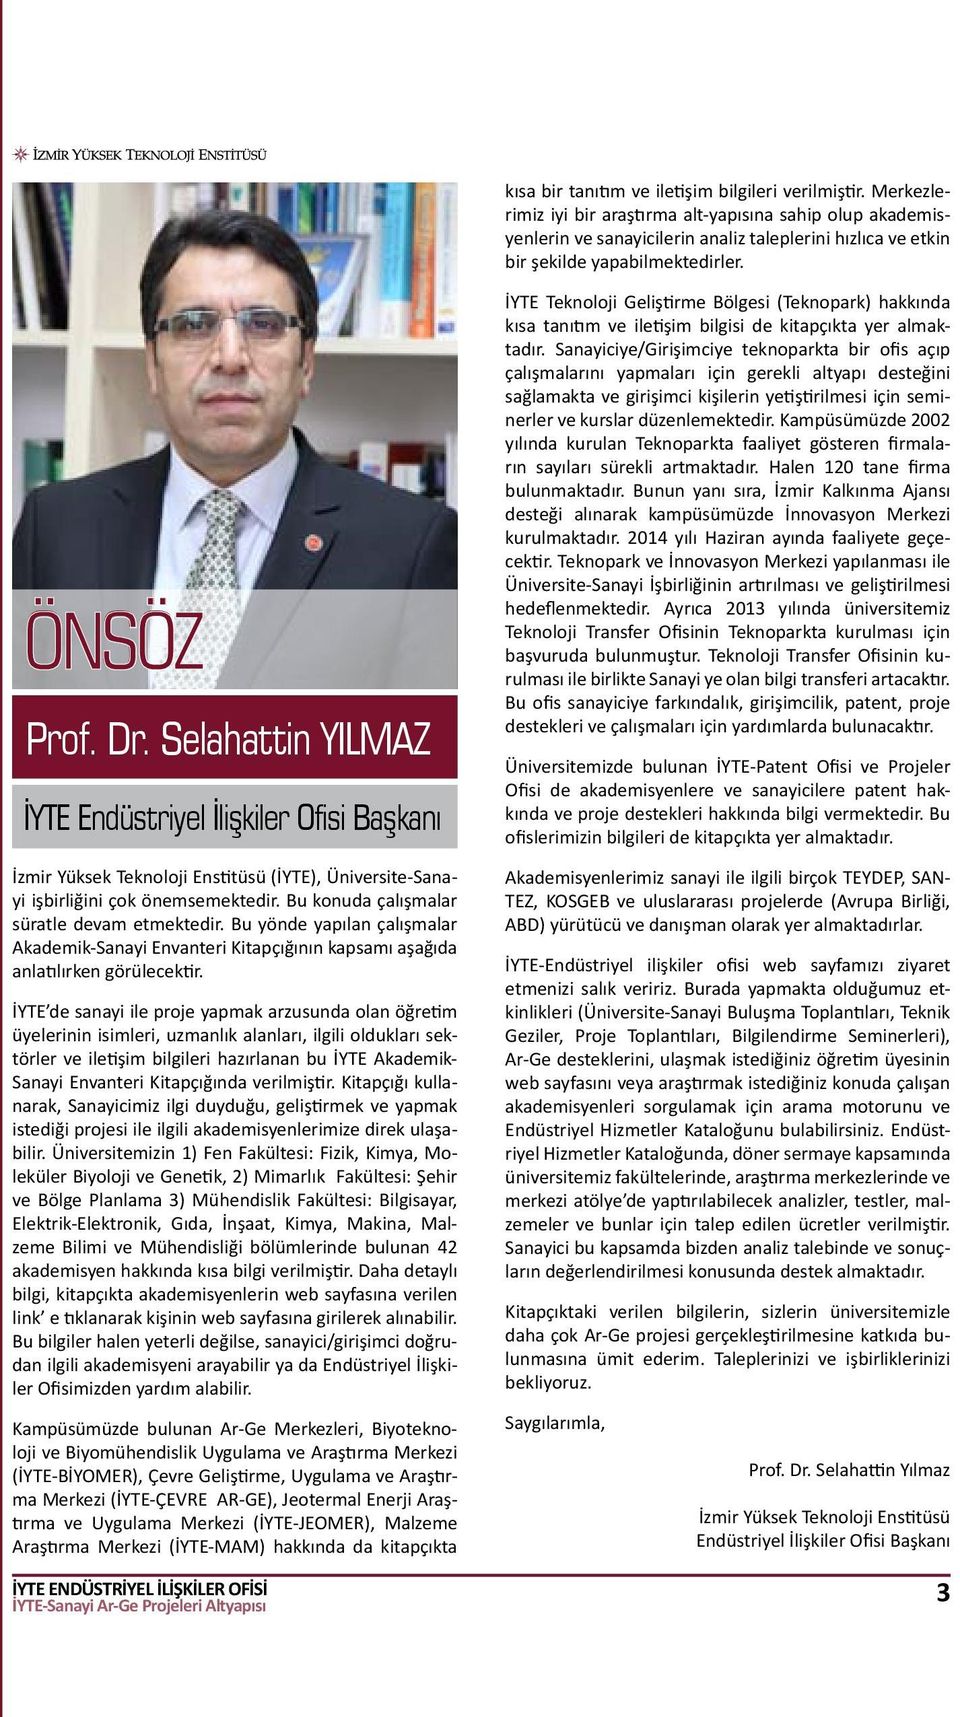 Selahattin YILMAZ İYTE Endüstriyel İlişkiler Ofisi Başkanı İzmir Yüksek Teknoloji Enstitüsü (İYTE), Üniversite-Sanayi işbirliğini çok önemsemektedir. Bu konuda çalışmalar süratle devam etmektedir.